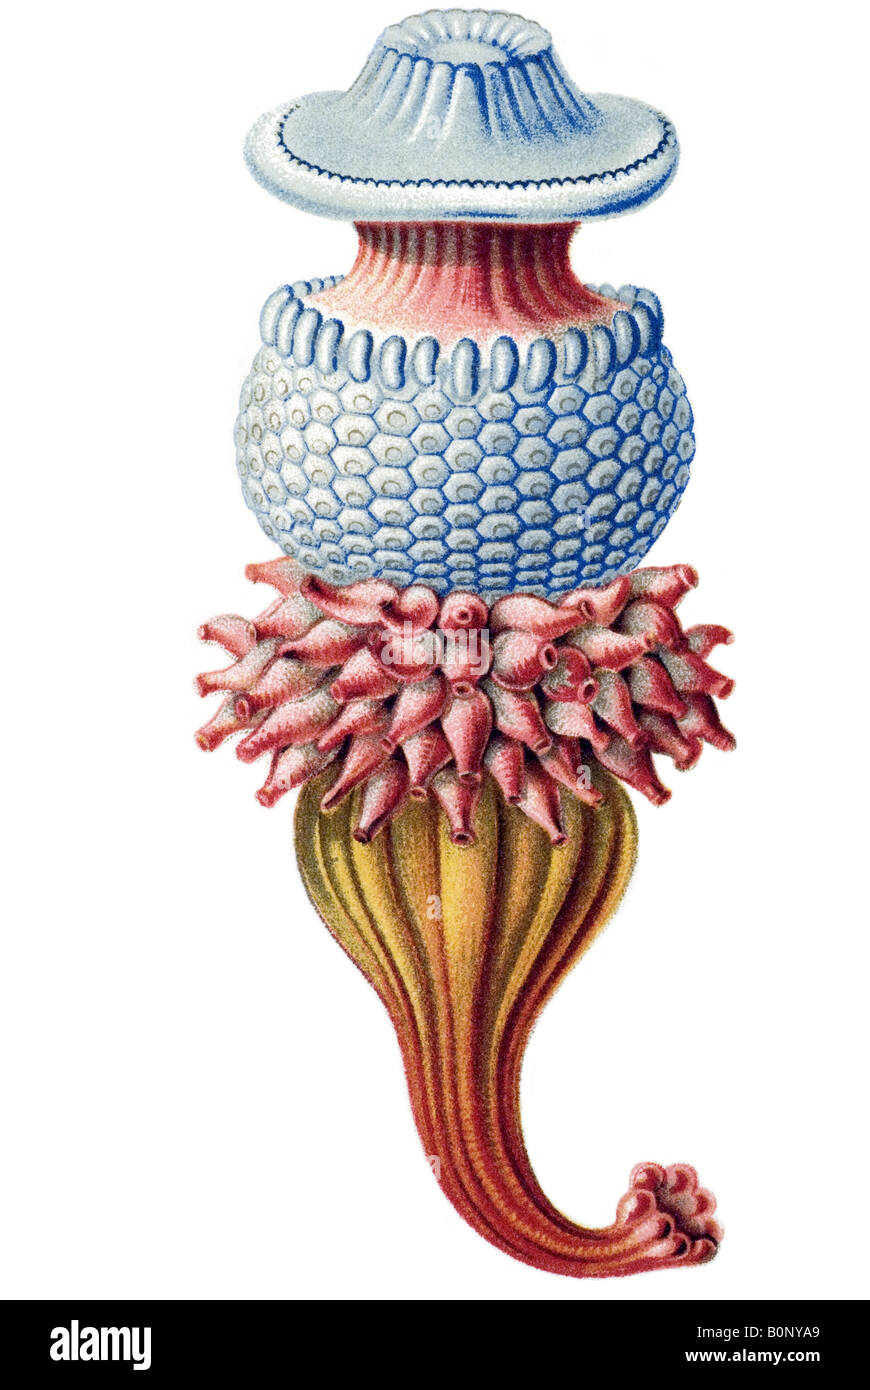 Nom Porpema Siphonophorae medusa, partie, Haeckel, l'Europe du 20e siècle art nouveau Banque D'Images